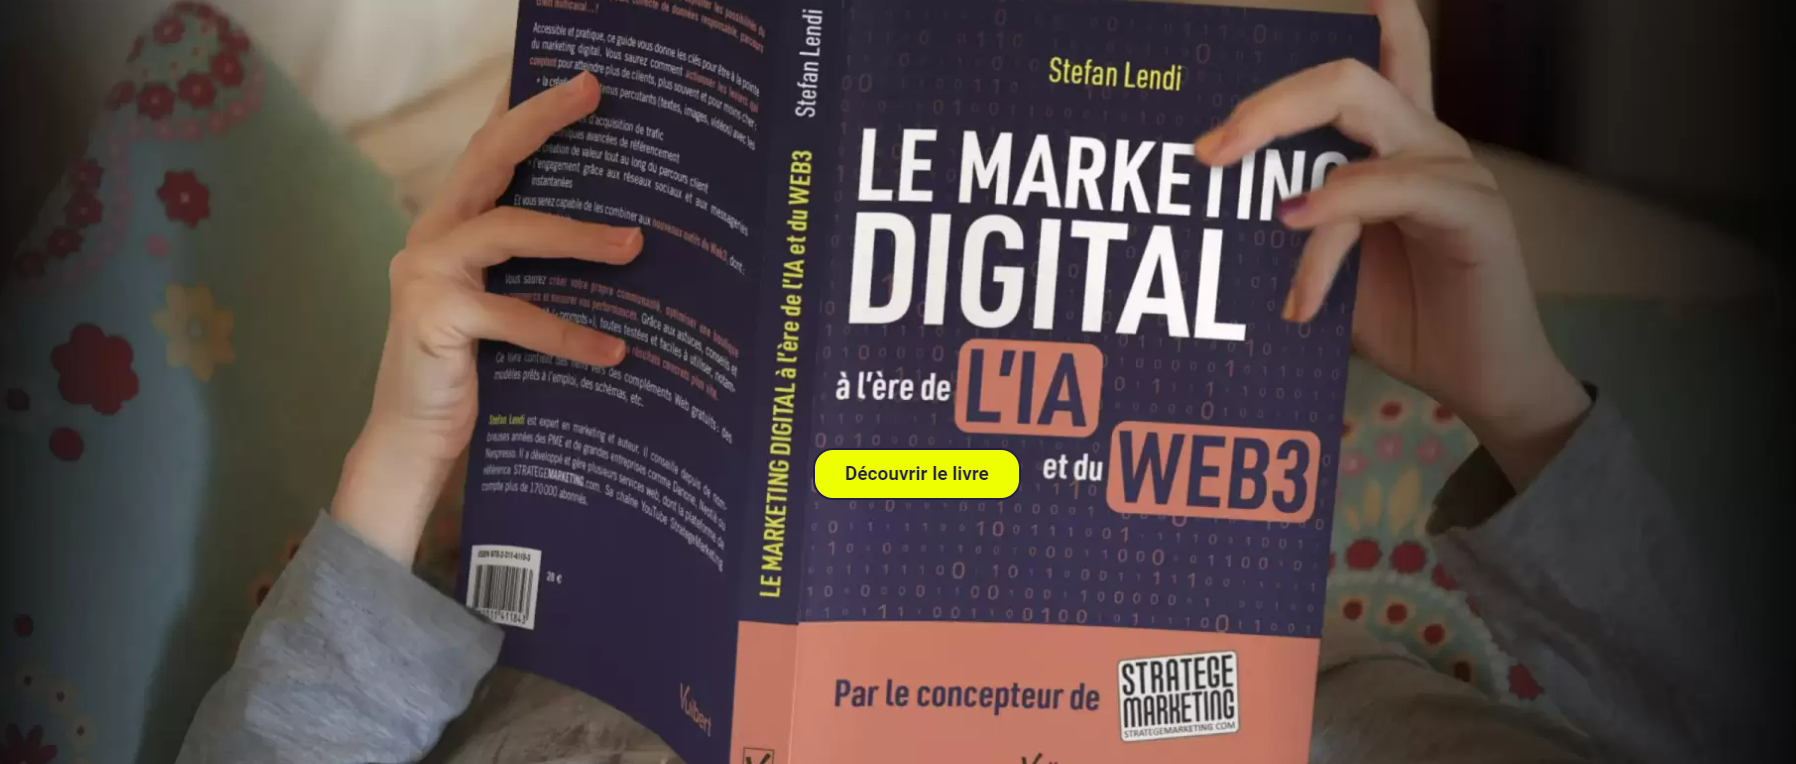 Le Marketing Digital à l'ère de l'IA et du Web 3 - Ce qu'il faut retenir du nouveau livre de Stefan Lendi 282